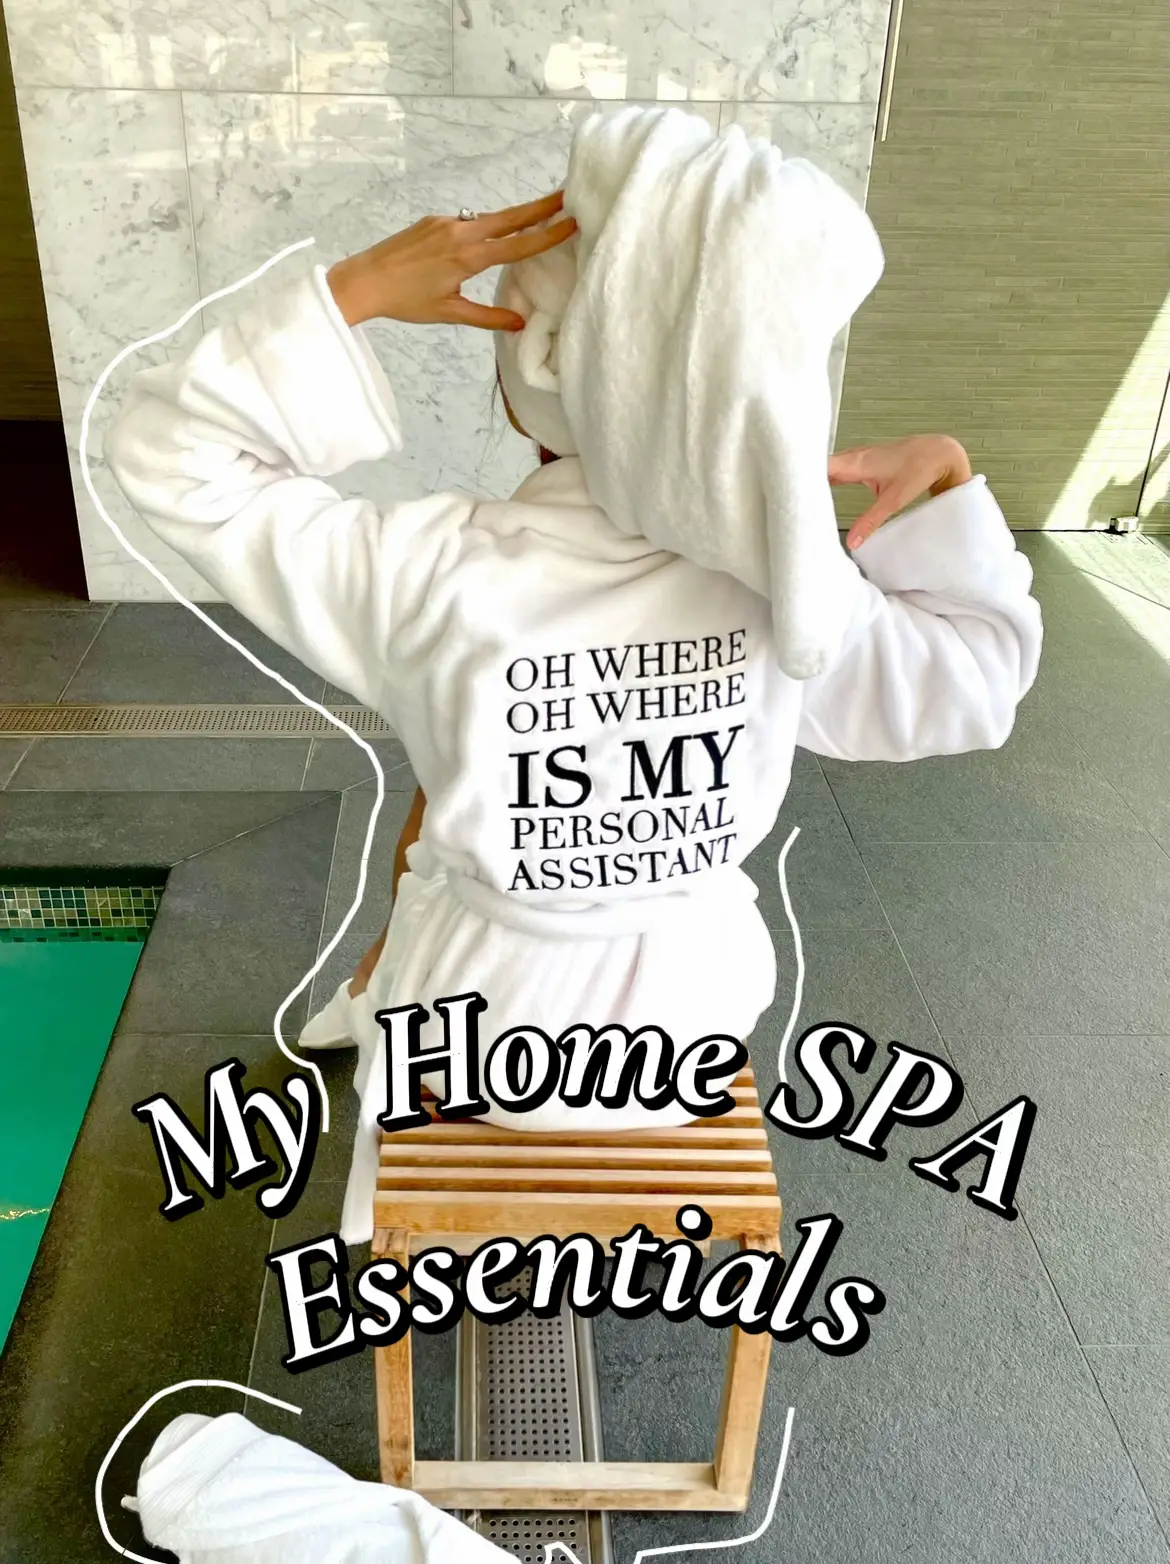 Home - Spa Essentials